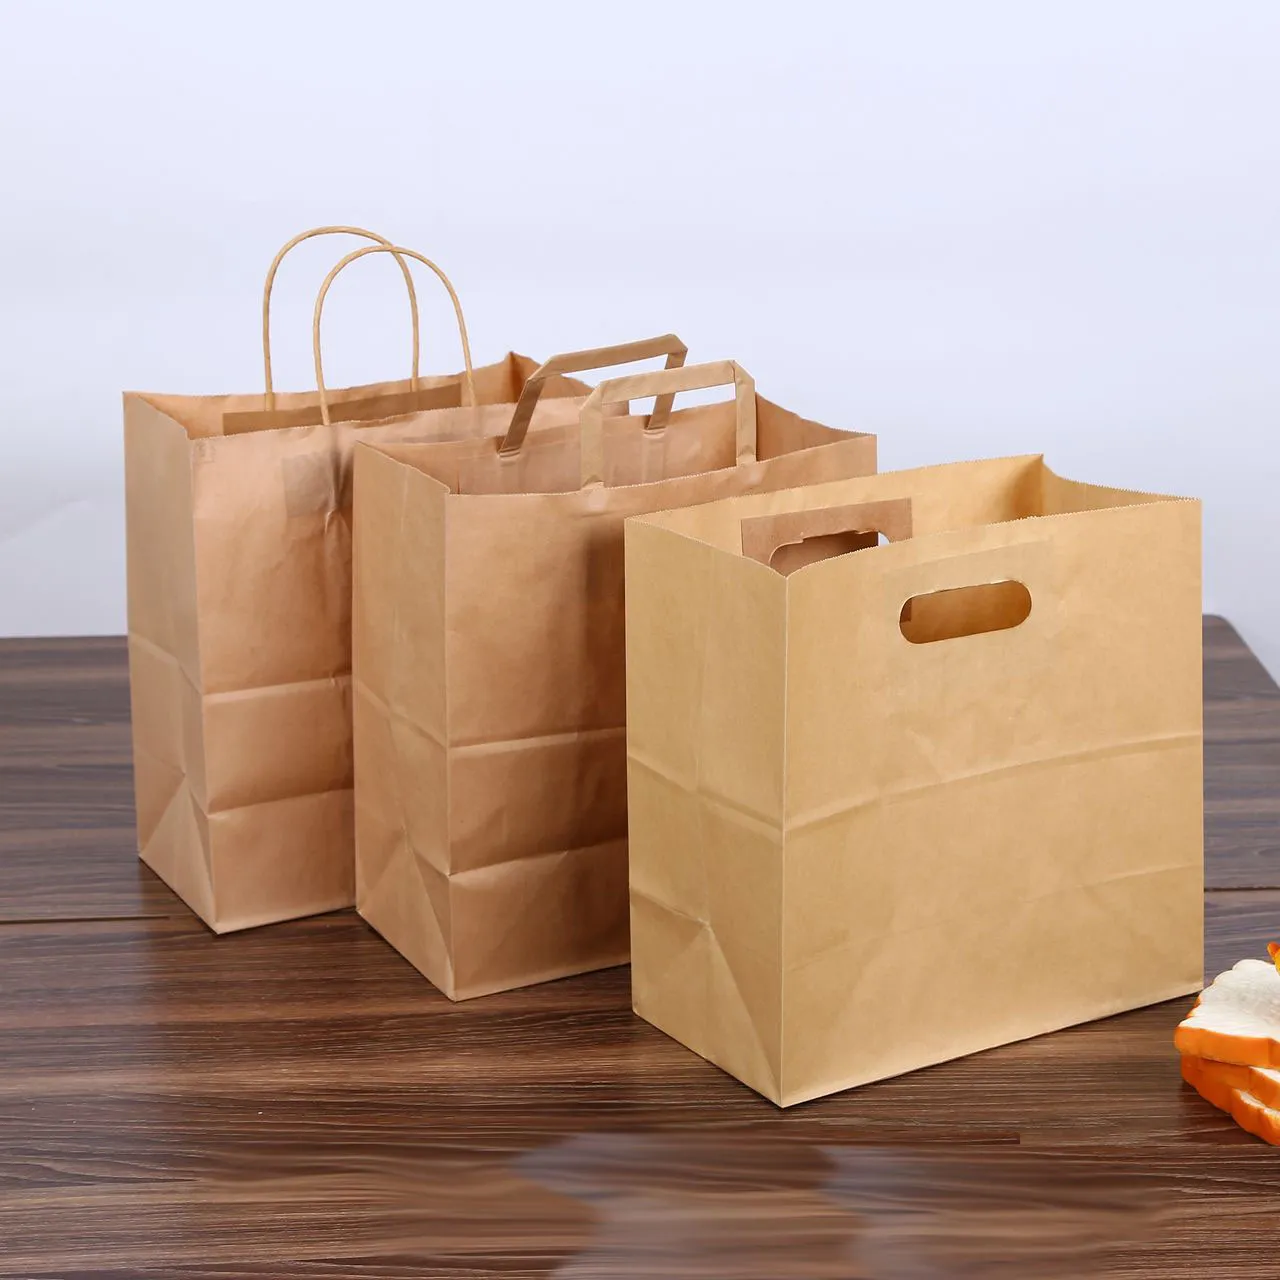 28x28 + 15 cm carta kraft sacchetto di pane imballaggio tote maniglia marrone fustellato baguette punzonatura cottura sacchetto di carta portatile LOGO personalizzato